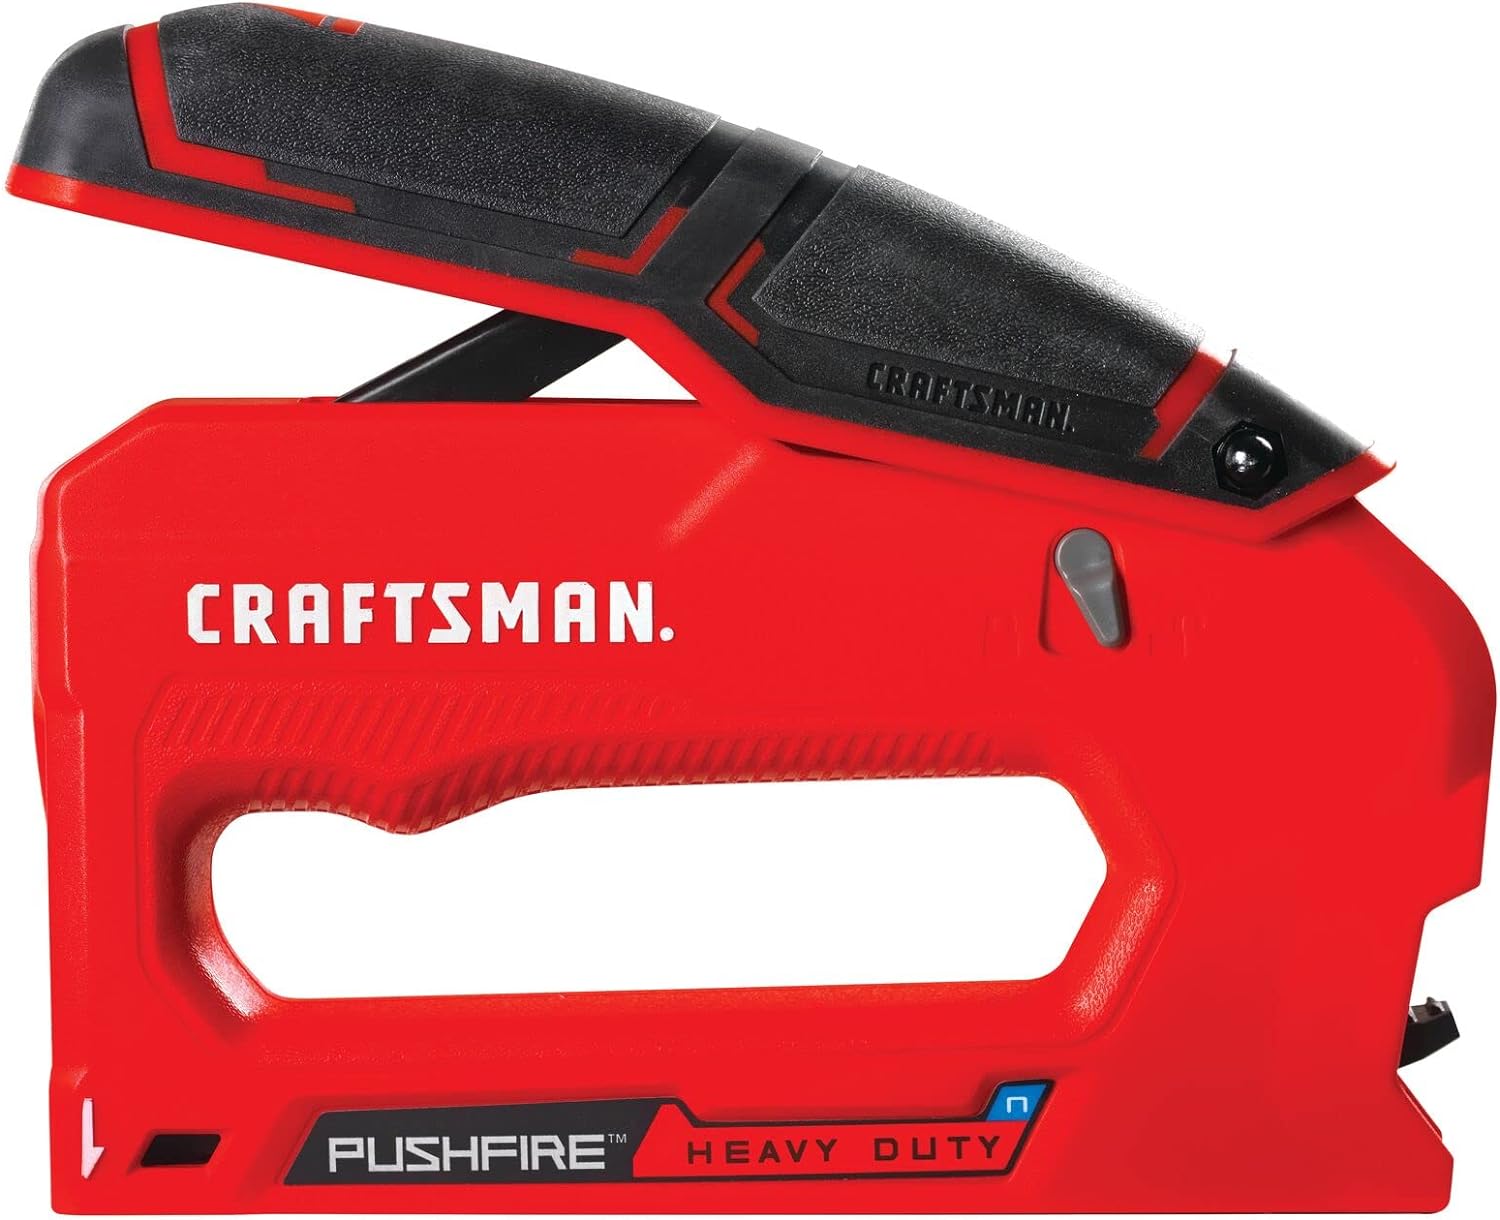 Craftsman Heavy Duty Reverse Squeeze Stapler (CMHT82643)